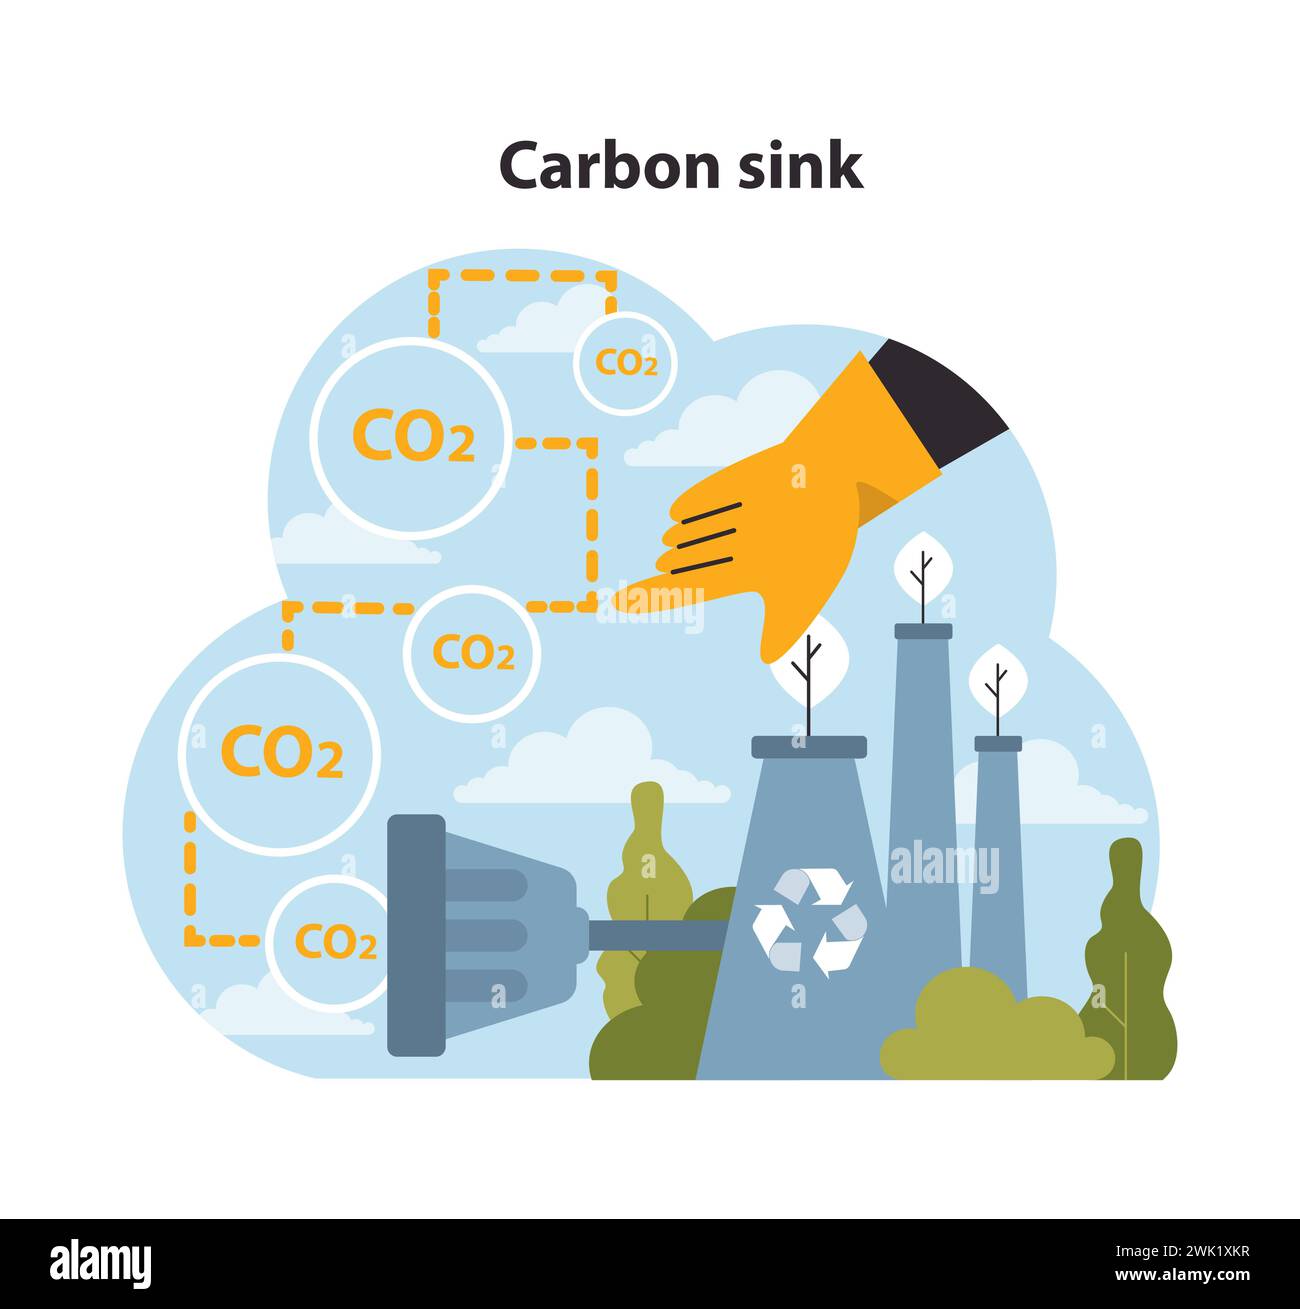 Guidare la mano dirige le emissioni di CO2 verso i pozzi di assorbimento del carbonio, simboleggiando gli sforzi per combattere il cambiamento climatico con l'aiuto della natura. Strategia ambientale. Illustrazione vettoriale piatta. Illustrazione Vettoriale